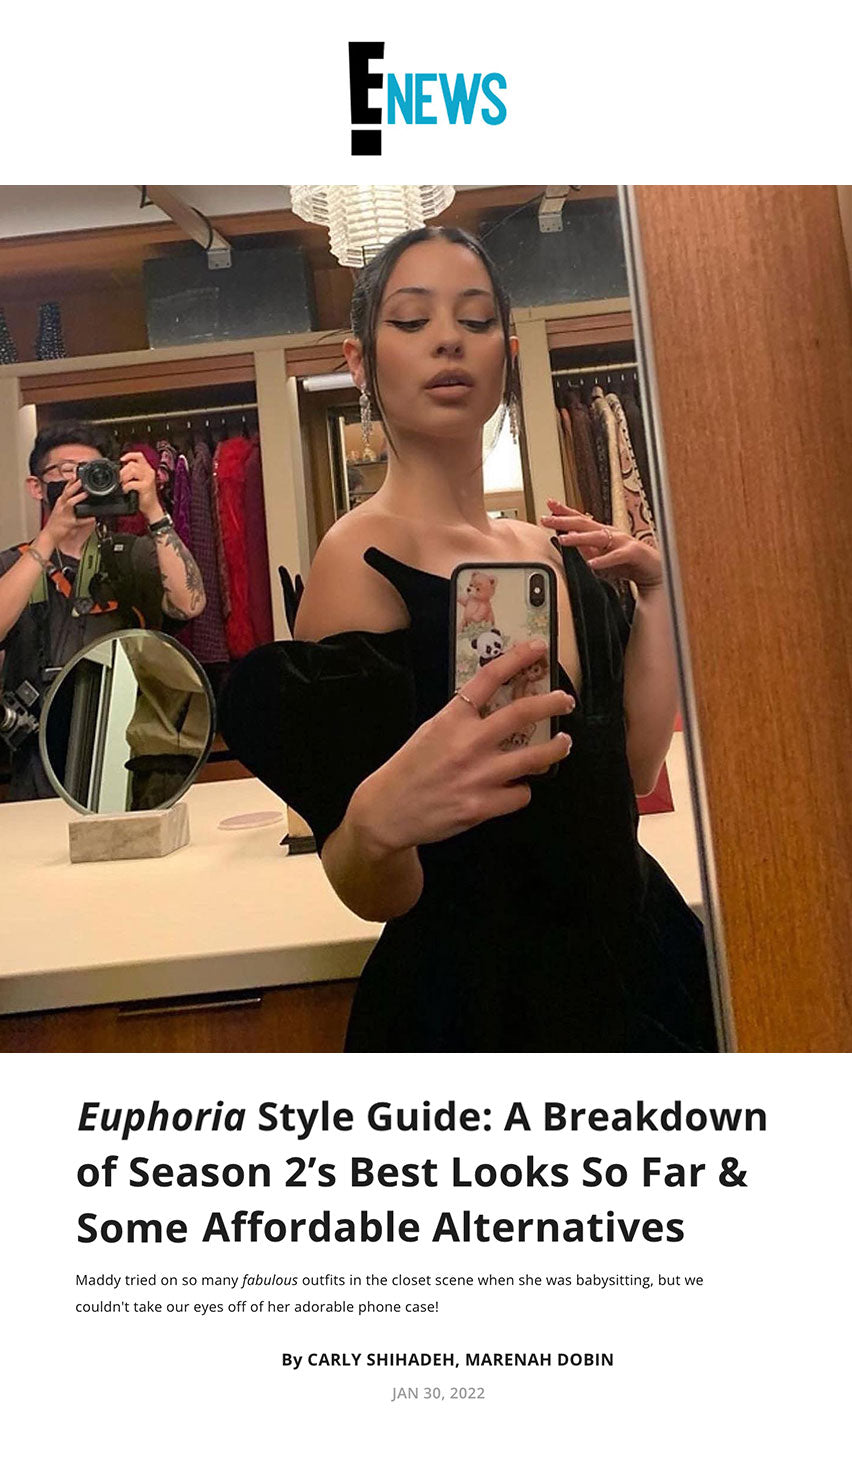 Euphoria Style Guide: A Breakdown of Season 2's Best Looks